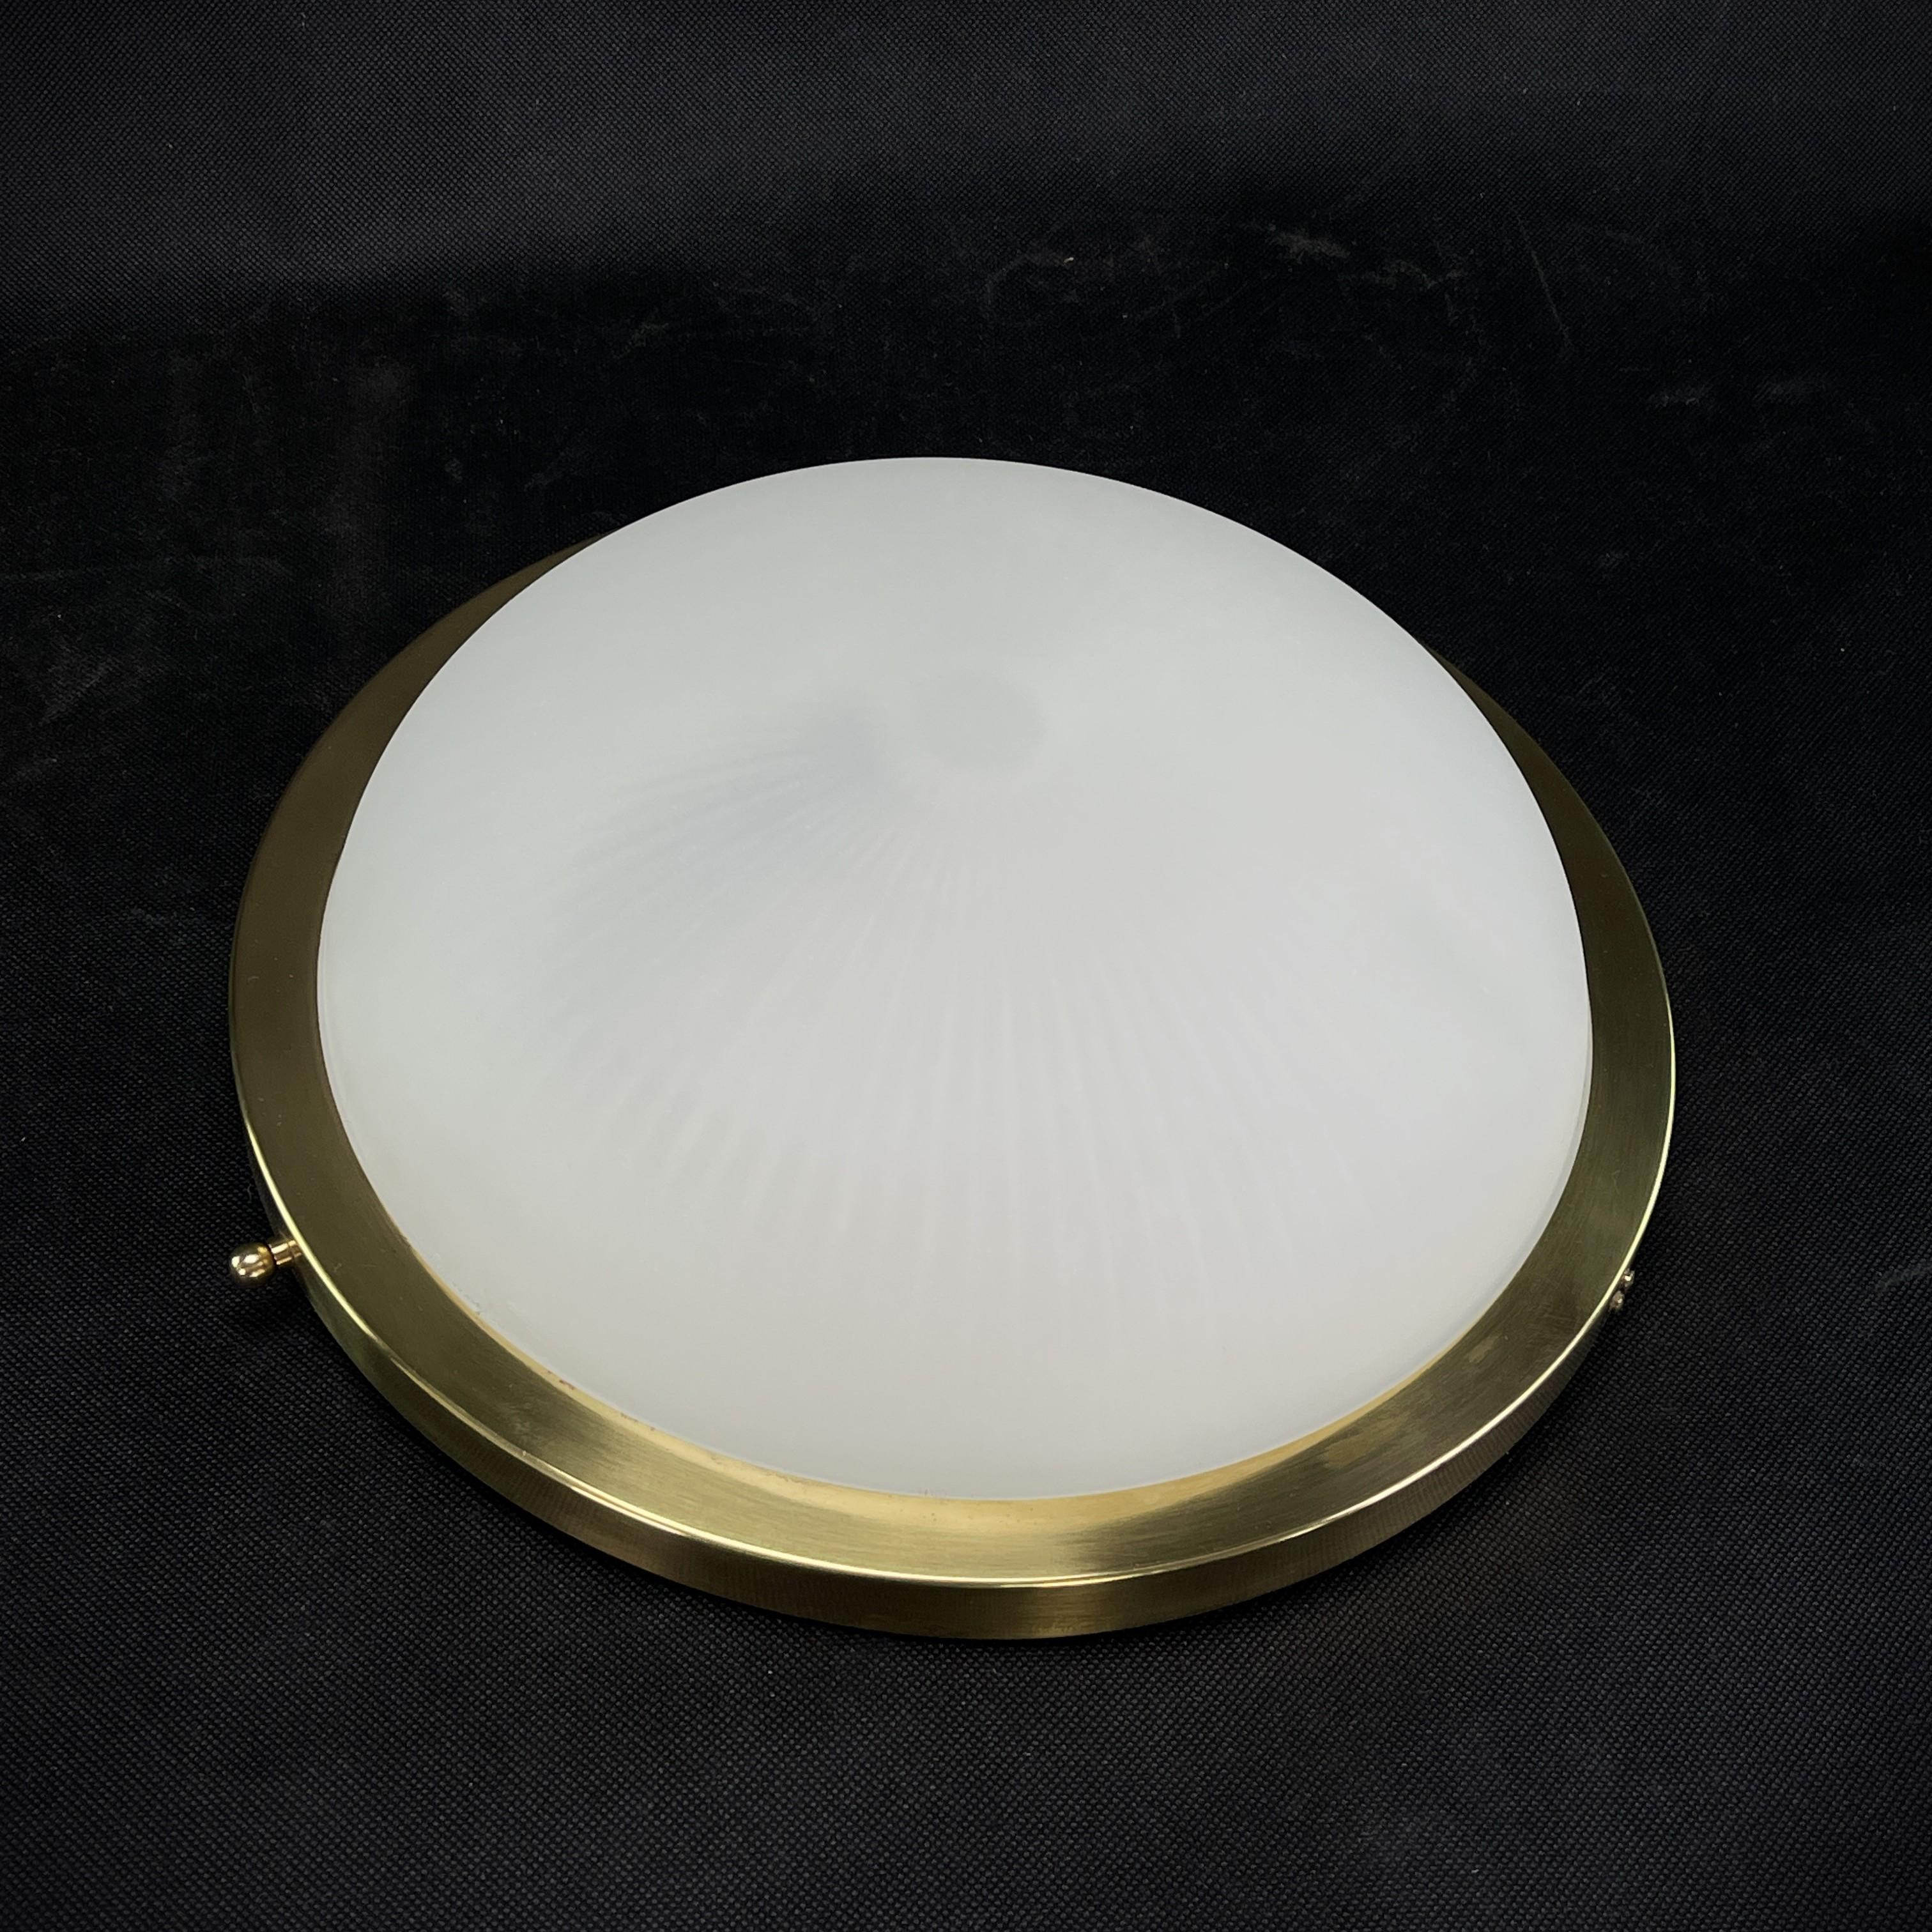 La lampe de luxe signée Perzel est une collection exquise d'éclairage design connue pour son style élégant, ses matériaux de haute qualité et son artisanat parfait. La marque Jean Perzel a été fondée à Paris en 1923 et s'est depuis forgée une